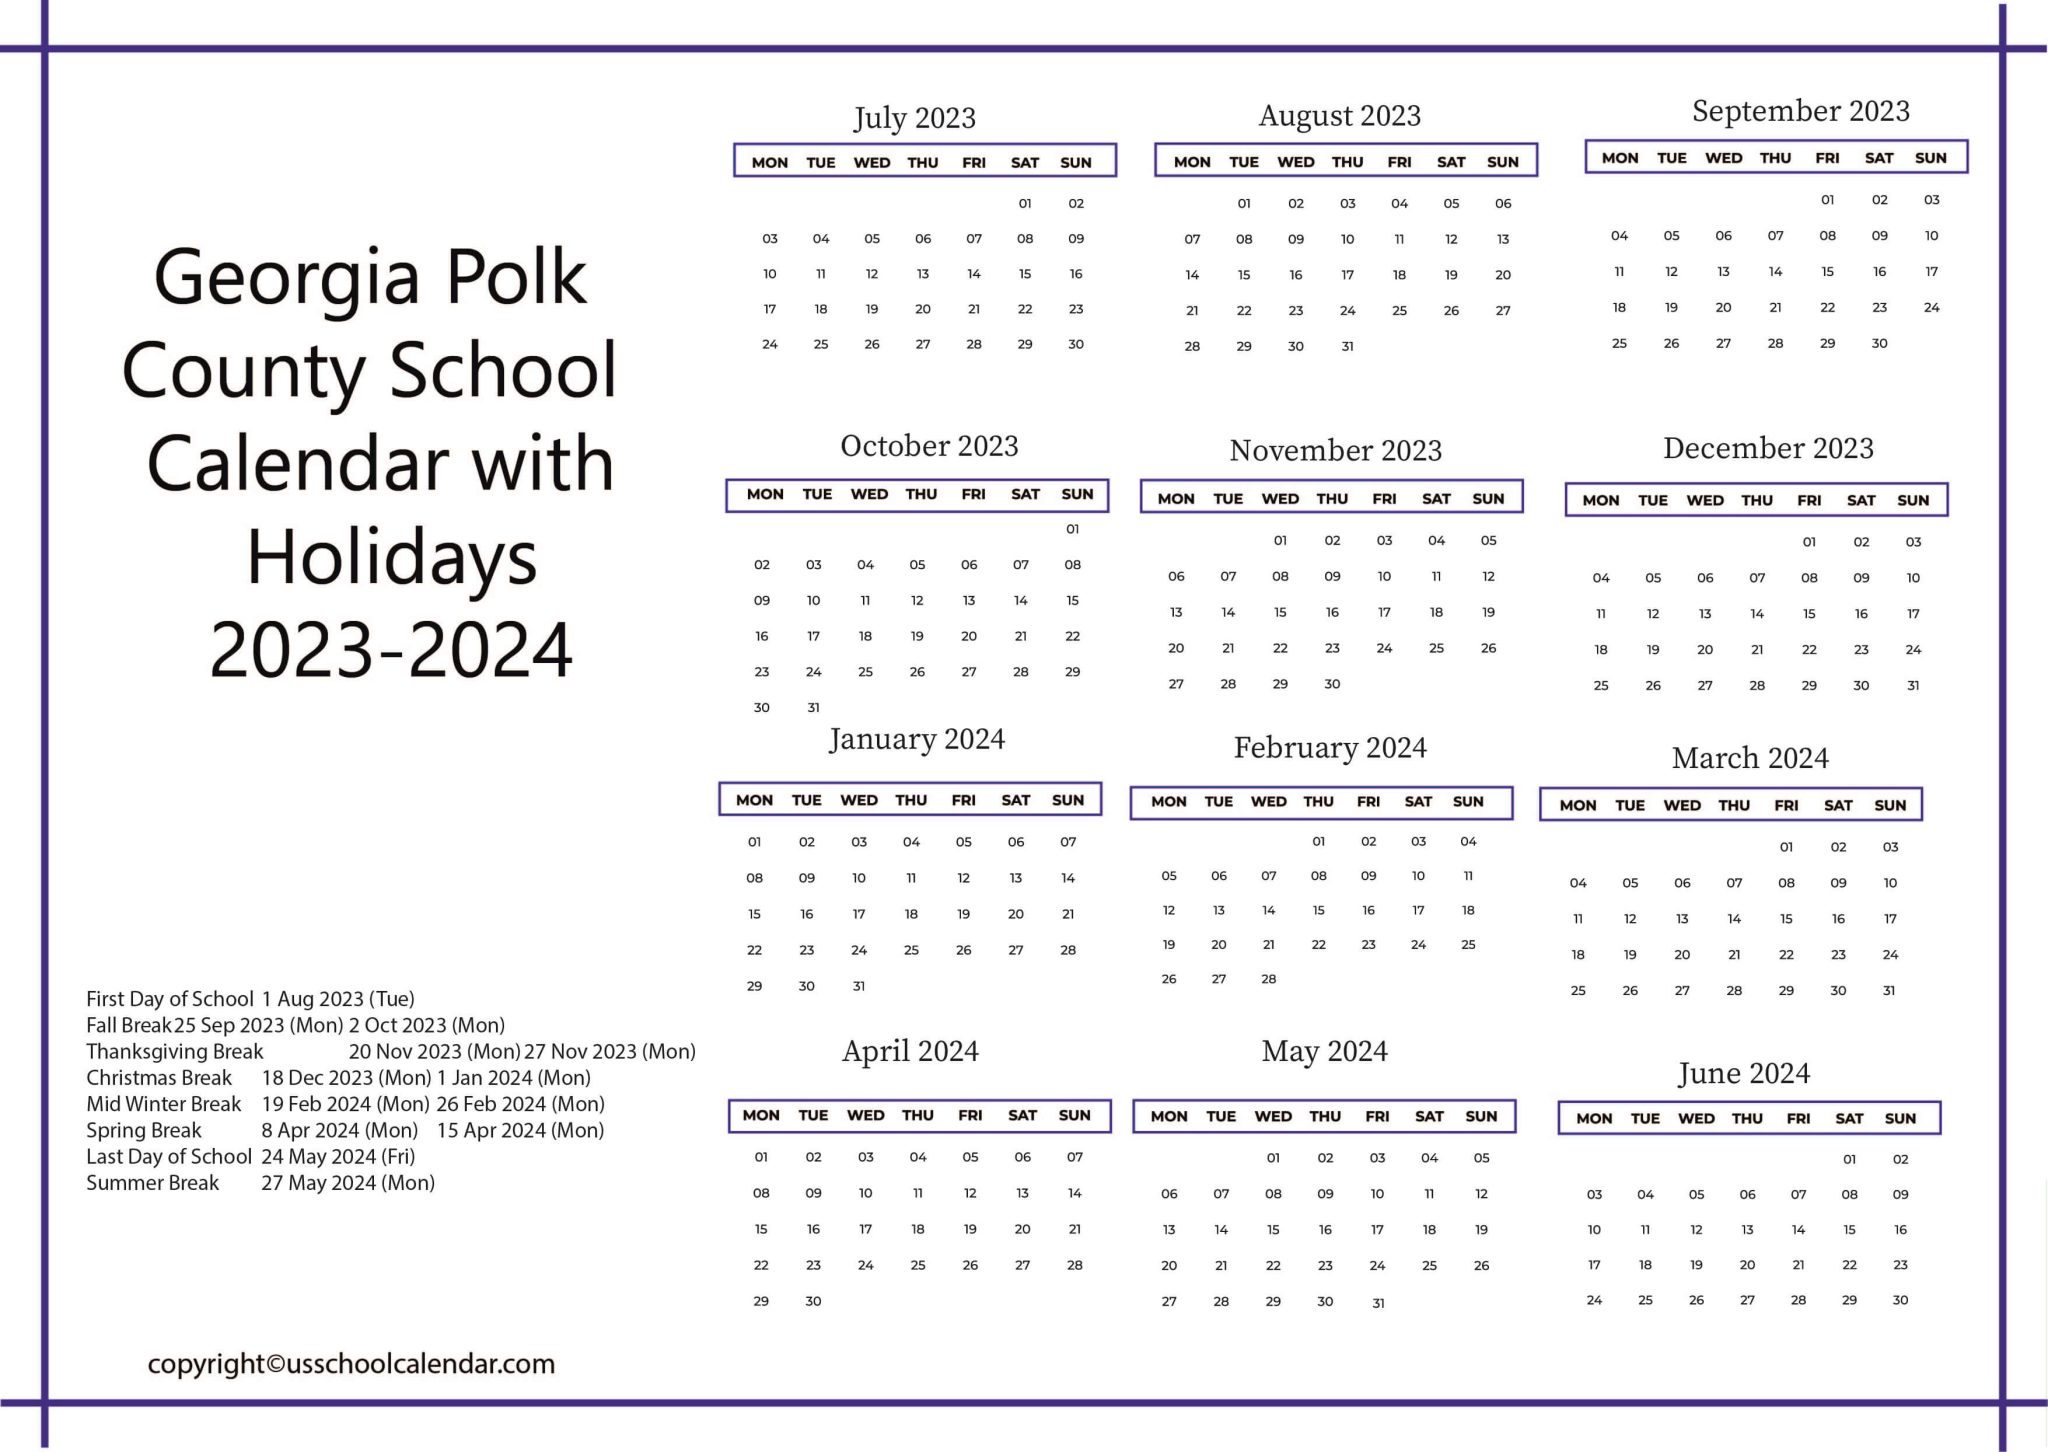 Polk County School Calendar with Holidays 20232024